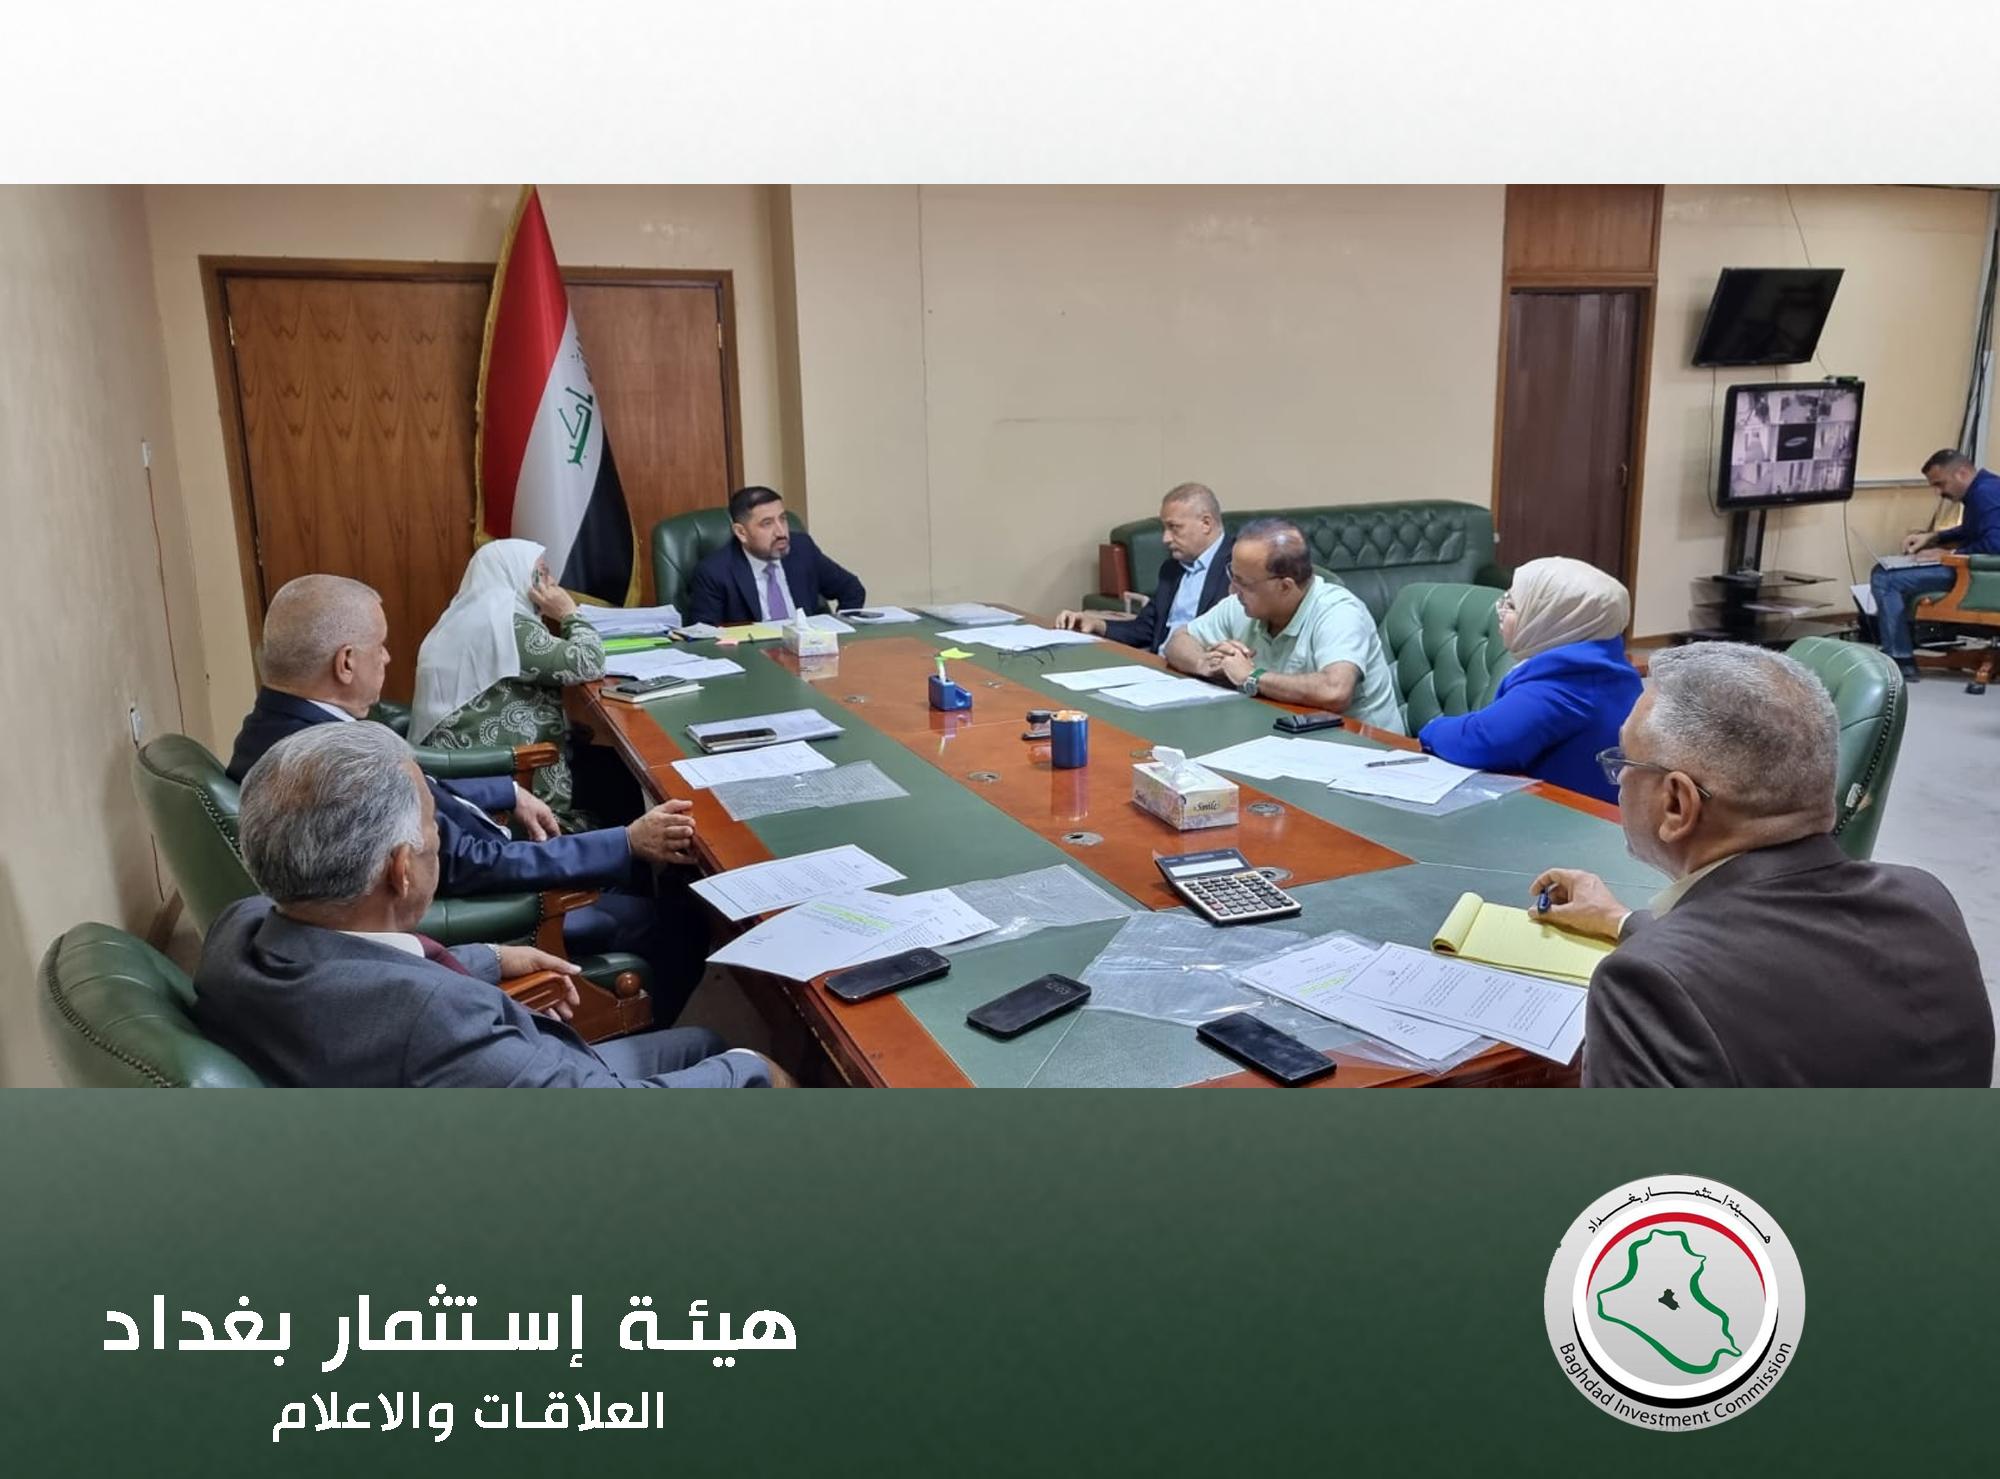 الحسن جميل يجتمع بأعضاء مجلس إدارة هيئة إستثمار بغداد لمناقشة واقع المشاريع الإستثمار